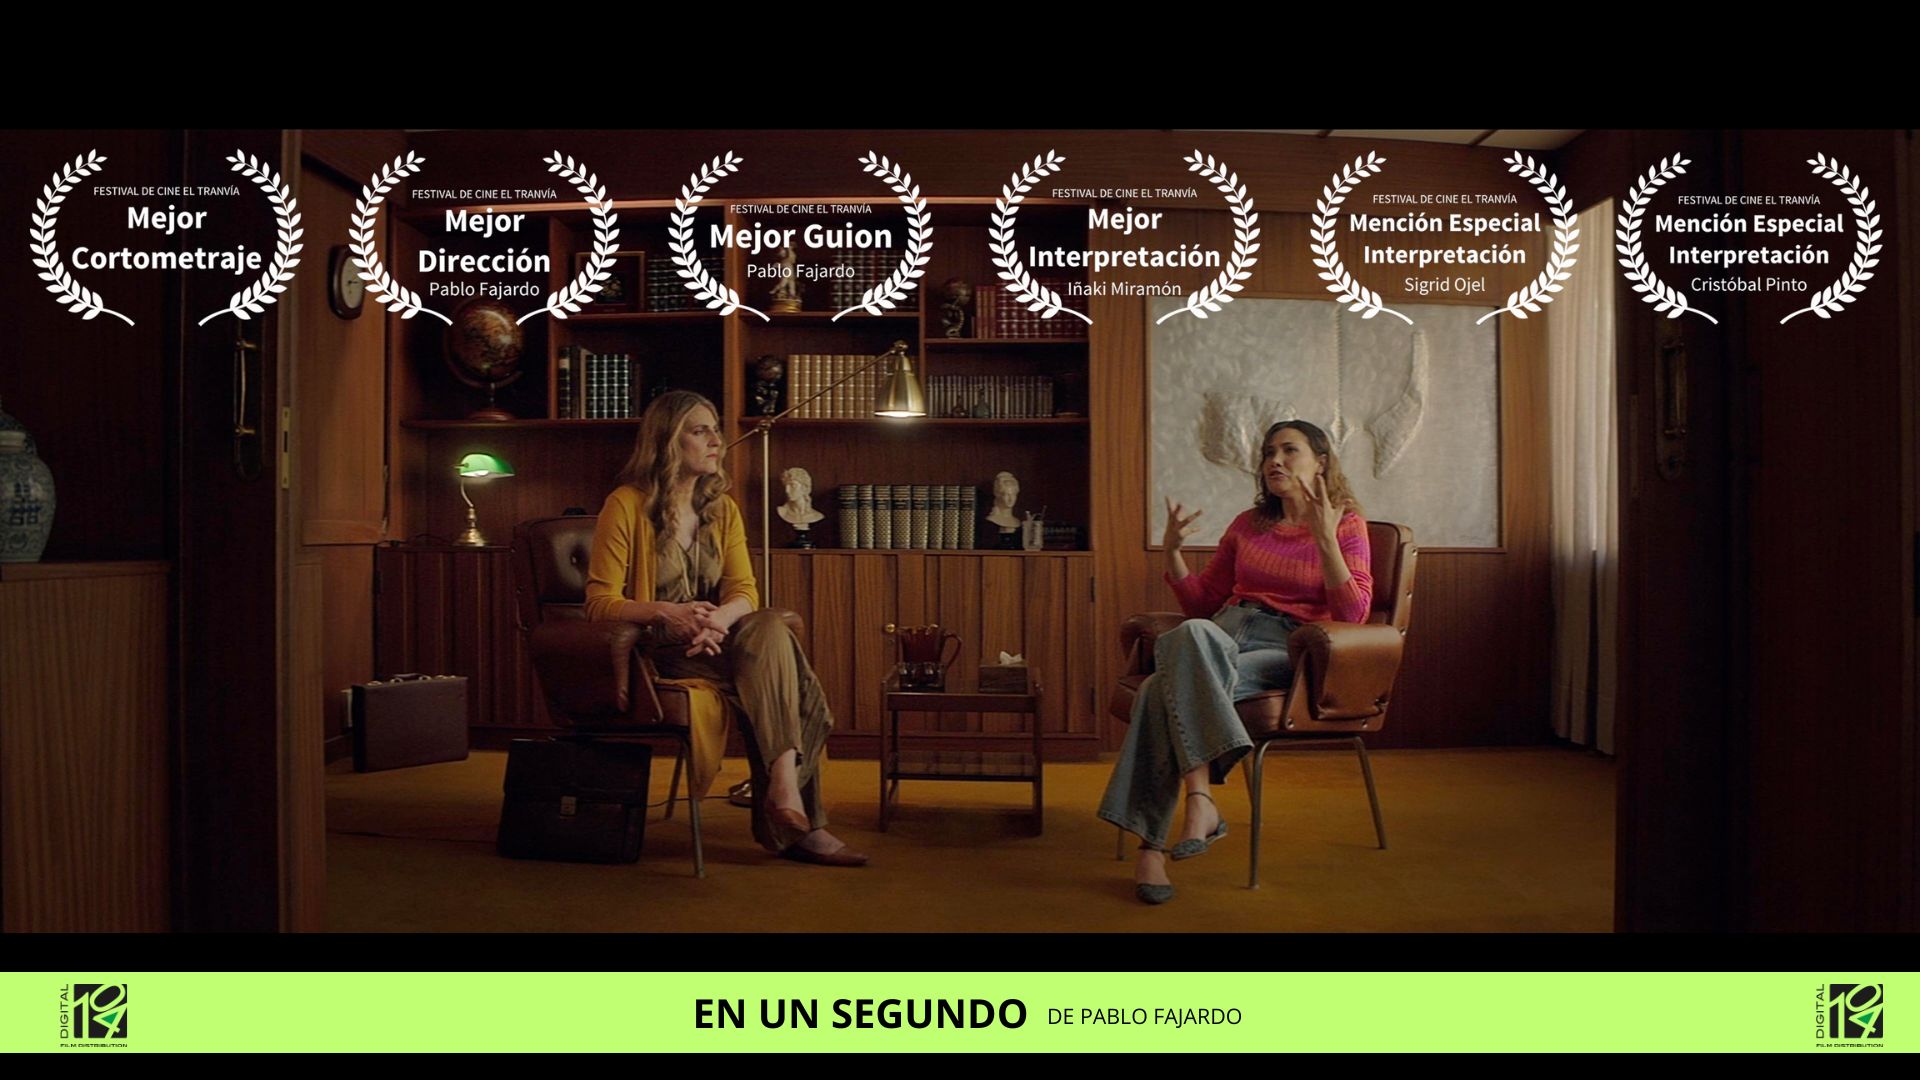 LIFE IN A SECOND, great winner of El Tranvía Film Festival